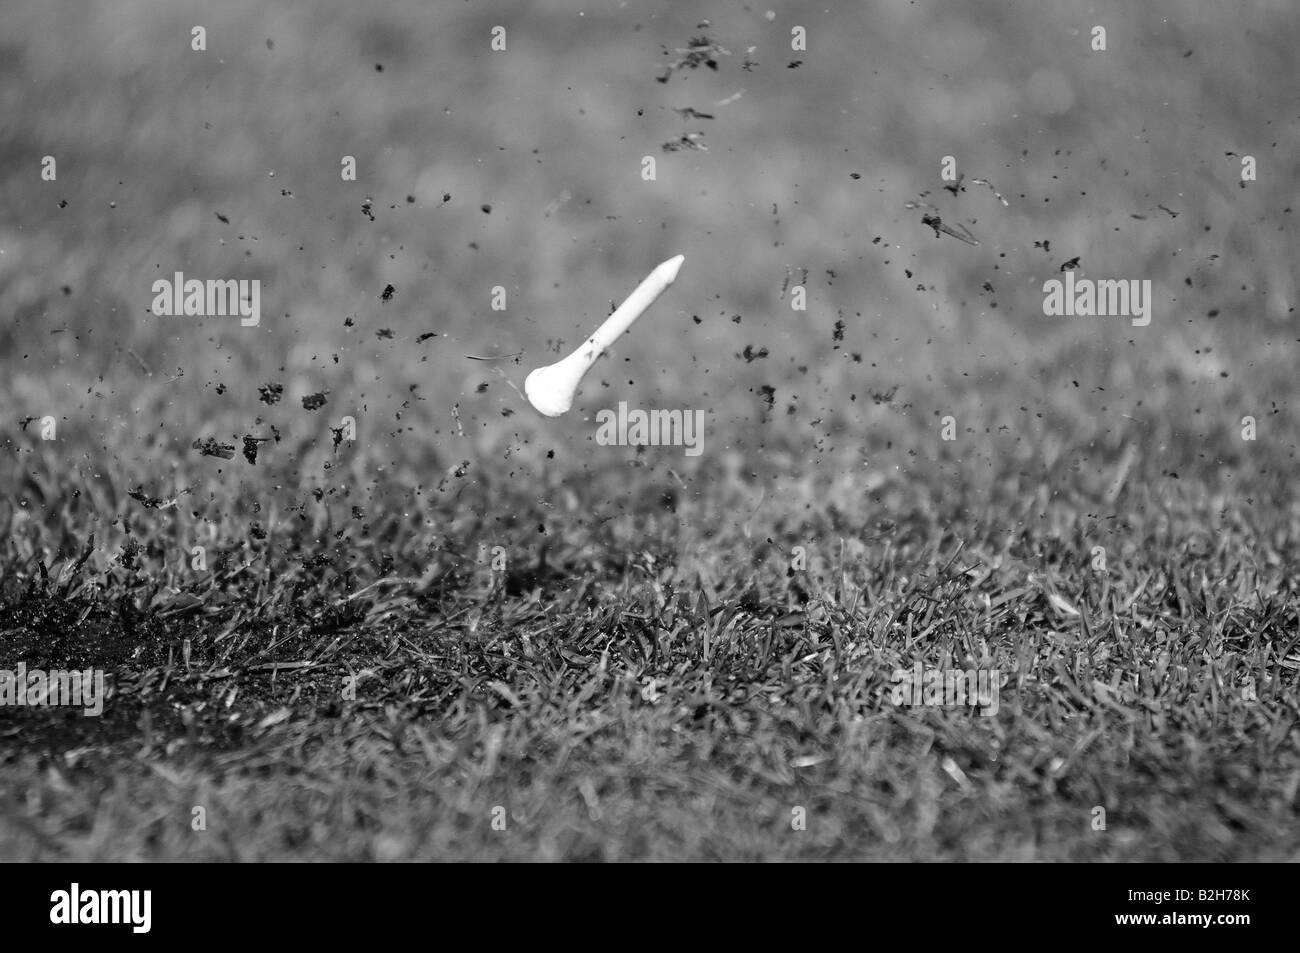 Un tee da golf in volo dopo una perfetta unità. L'erba e fango volare attraverso l'aria, il raccordo a t e il momento, congelate per sempre in tîme Foto Stock